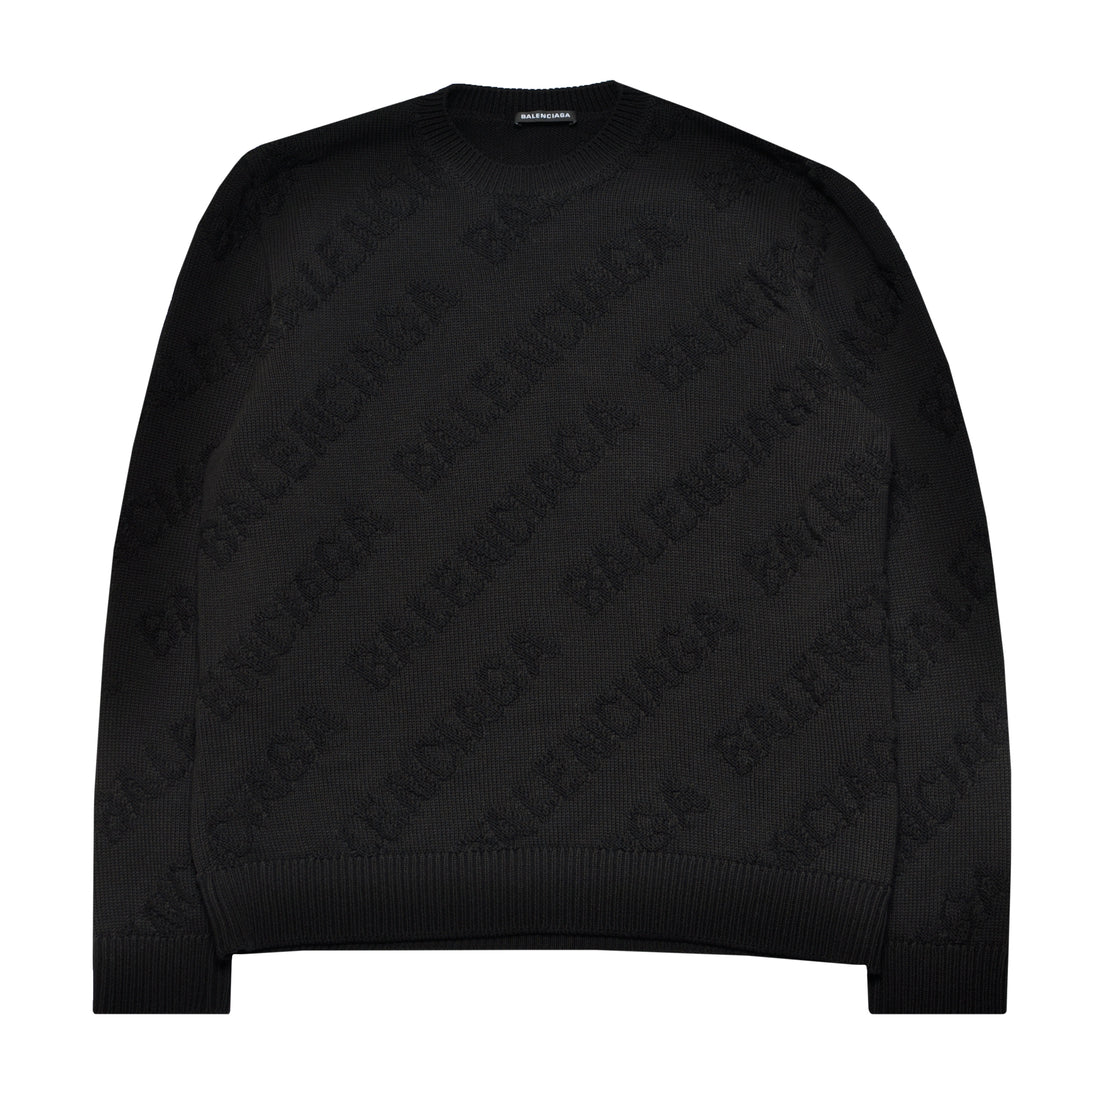 Balenciaga All-Over Print Sweater